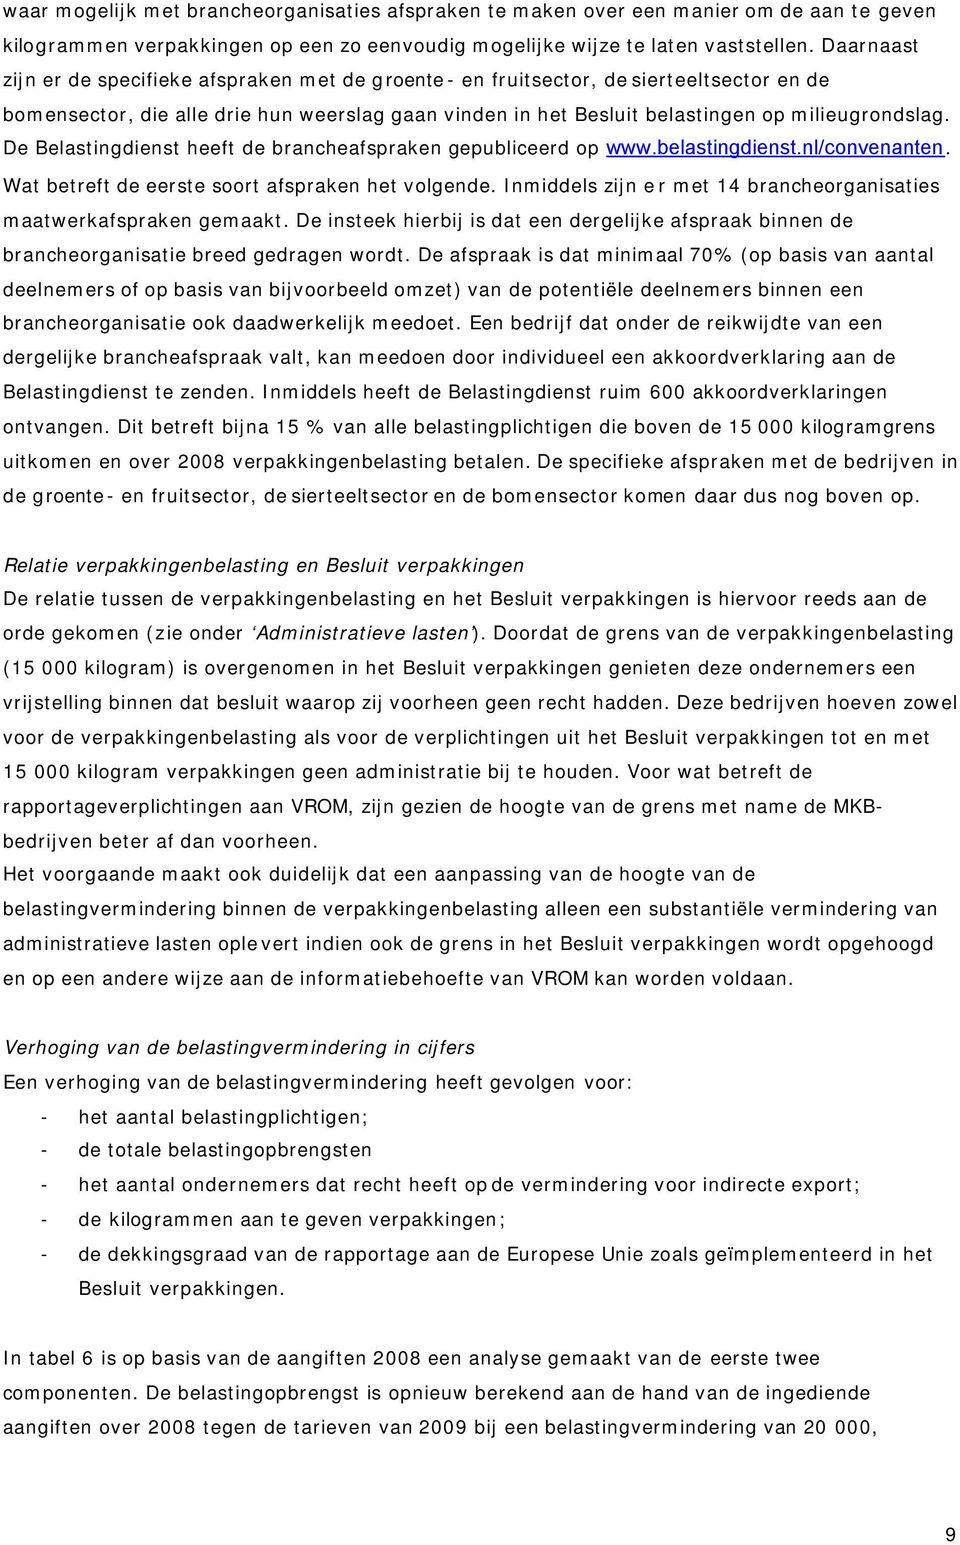 De Belastingdienst heeft de brancheafspraken gepubliceerd op www.belastingdienst.nl/convenanten. Wat betreft de eerste soort afspraken het volgende.